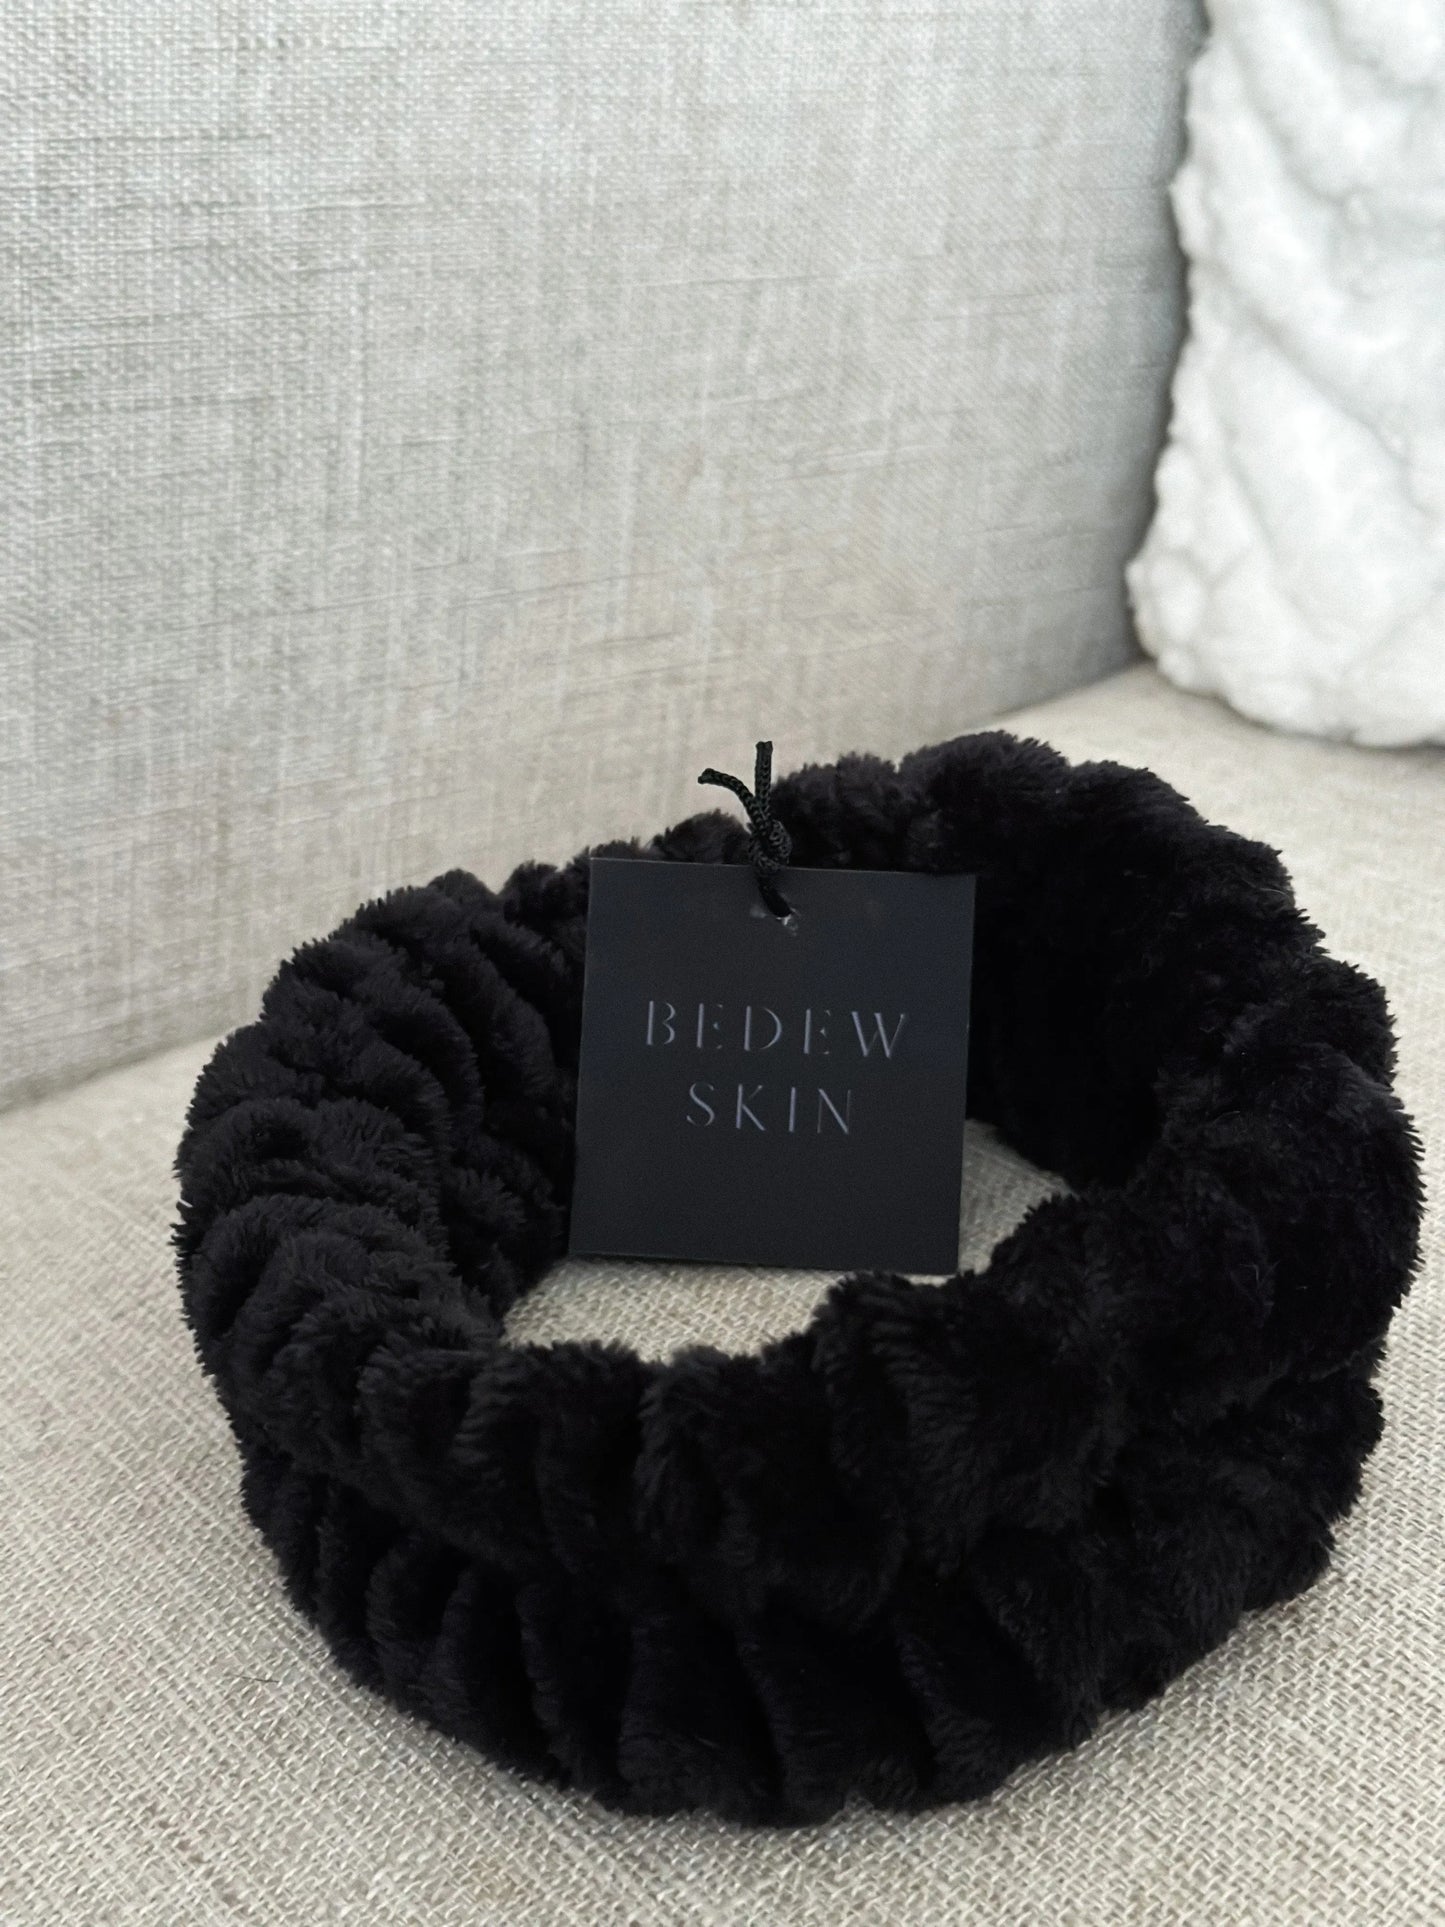 The Headband - Bedew Skin Bedew Skin